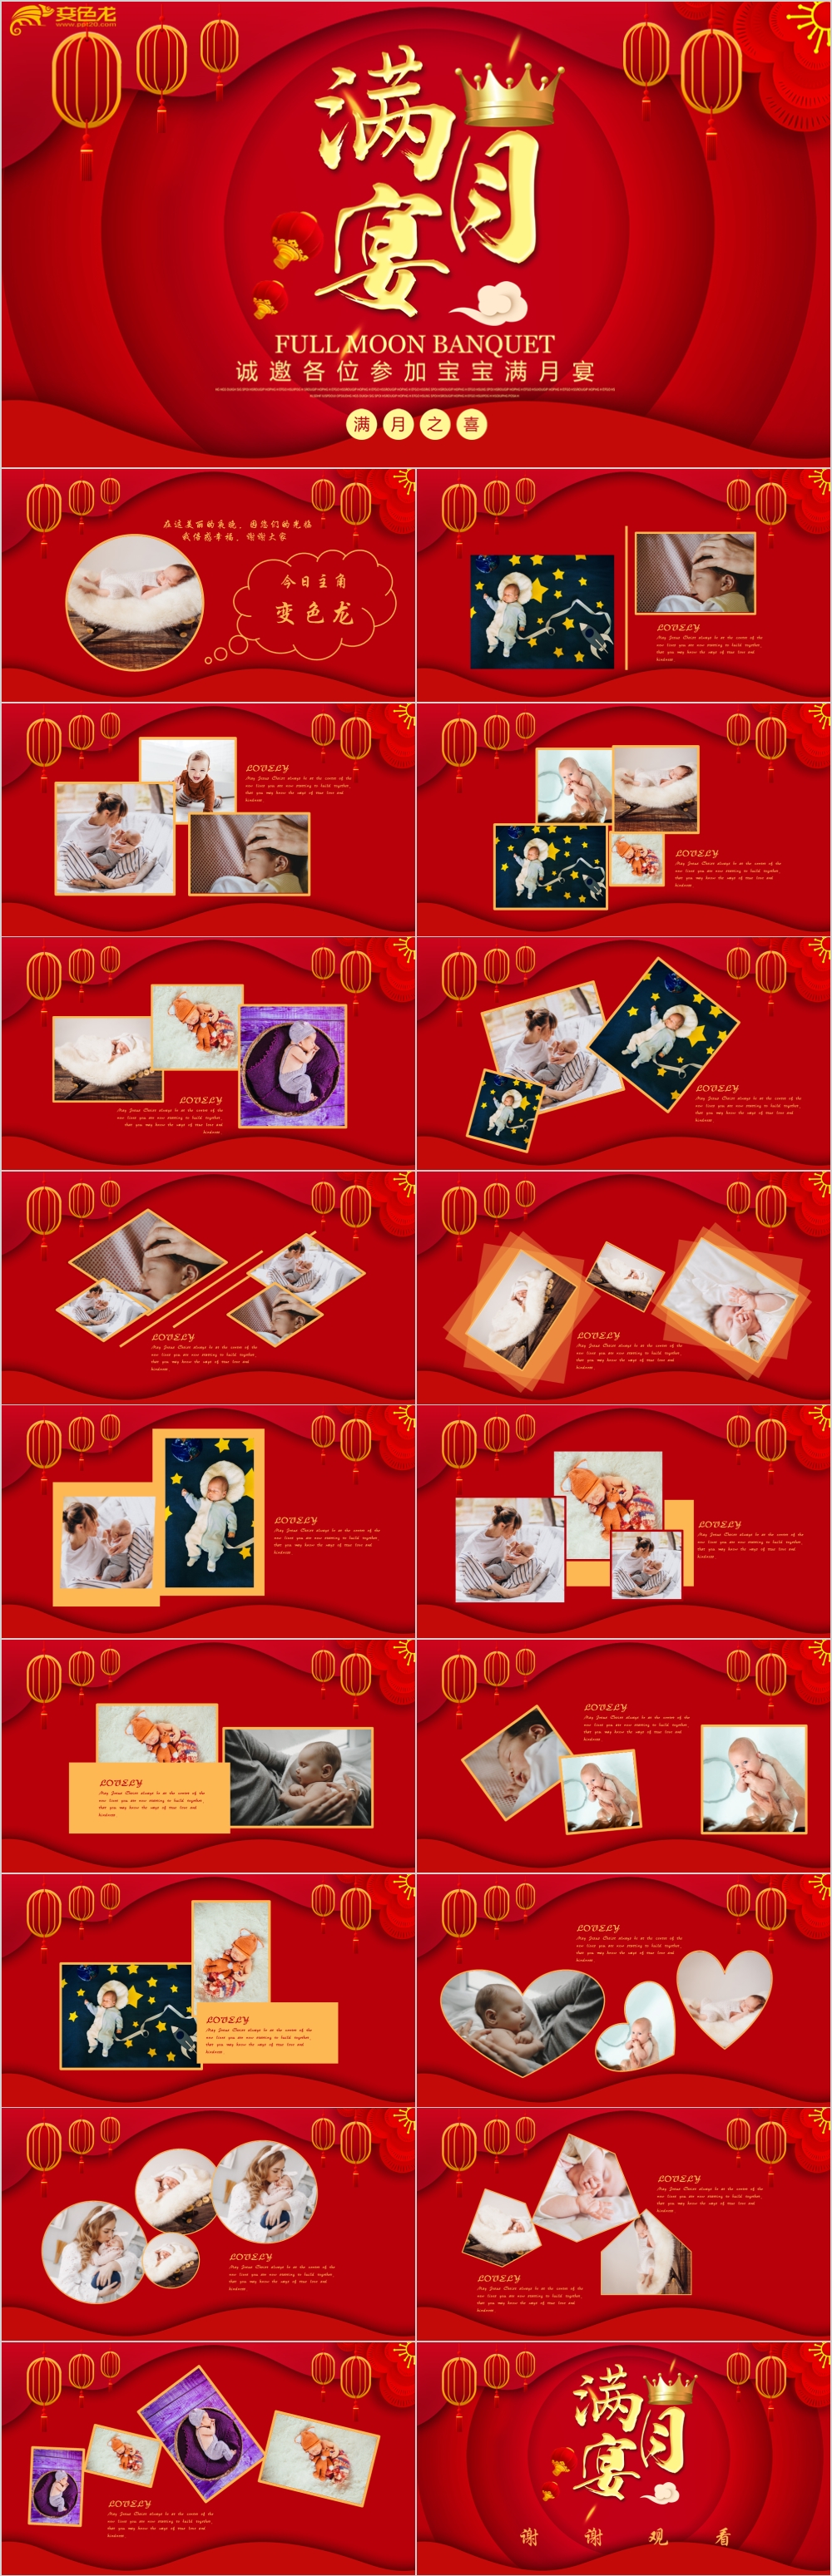 经典中国红宝宝满月宴相册图集通用ppt模版模板免费